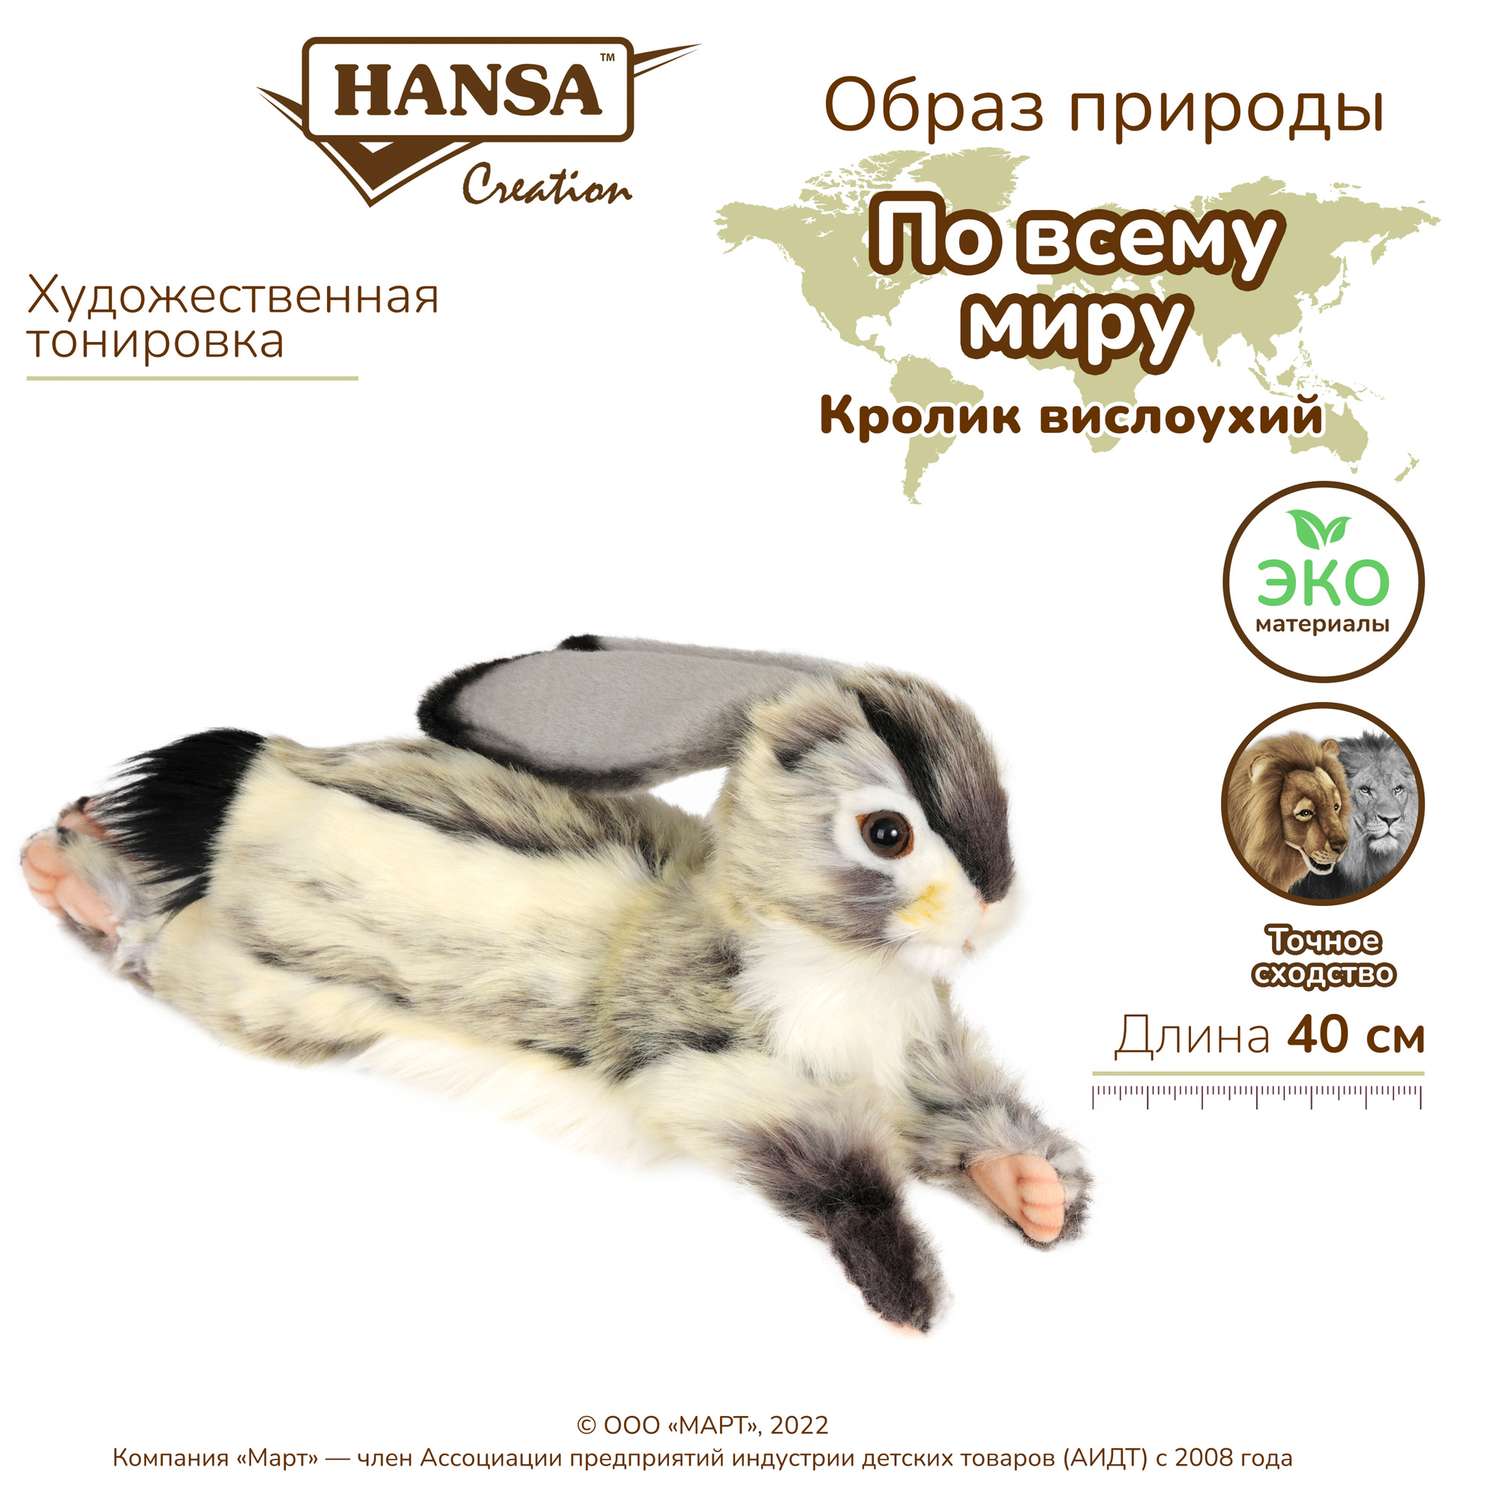 Реалистичная мягкая игрушка Hansa Кролик вислоухий серый 40 см - фото 2